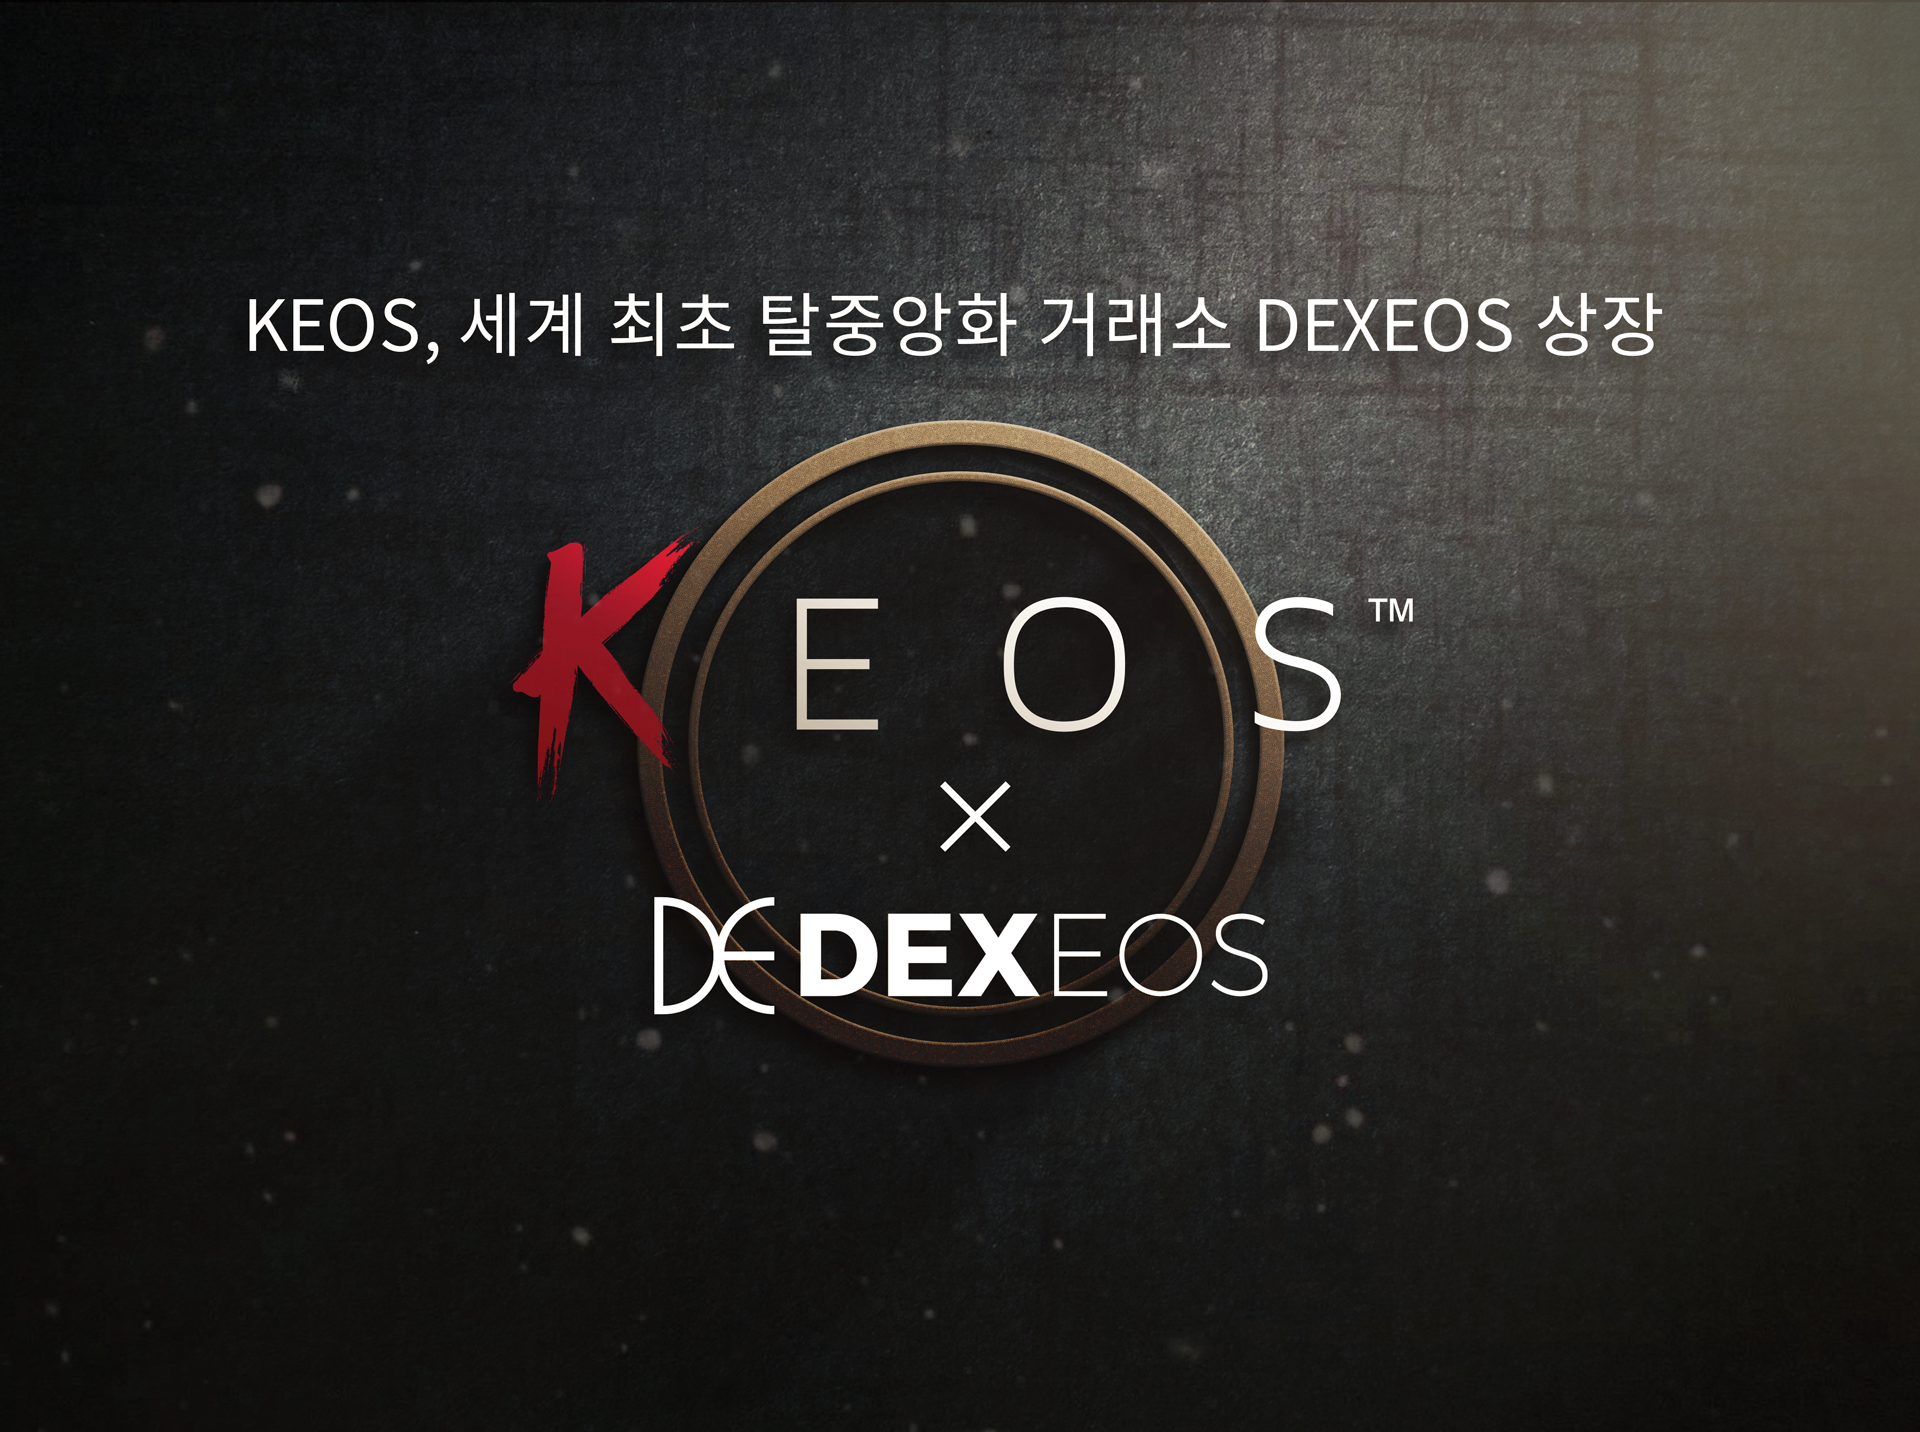 케이오스(KEOS), 세계 최초 이오스 기반 탈중앙화 거래소 덱시오스(DEXEOS) 상장